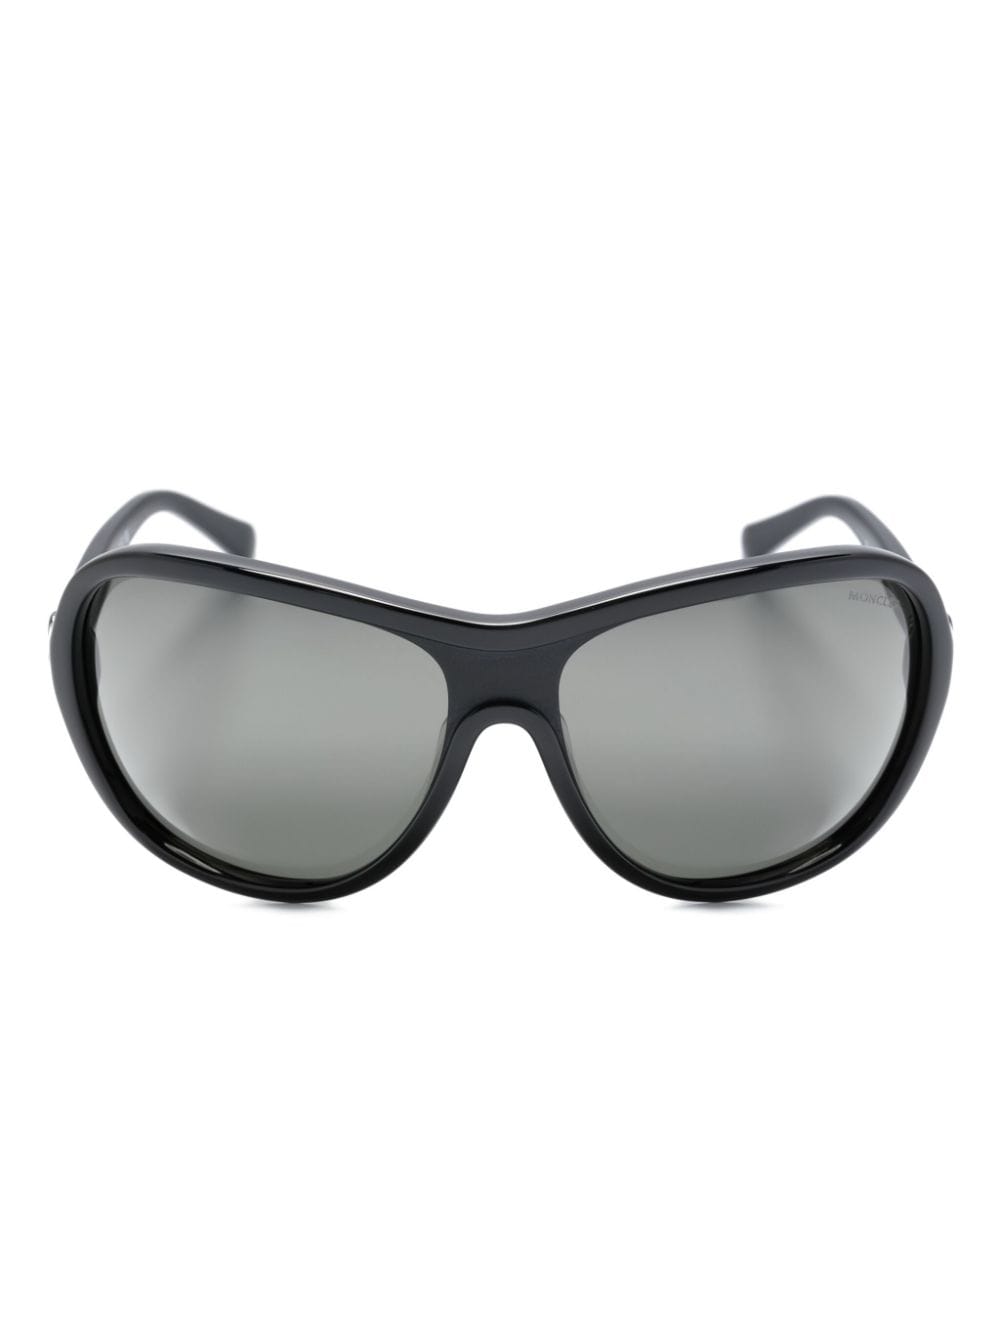 Moncler Eyewear Ellesole shield tinted sunglasses - Black von Moncler Eyewear